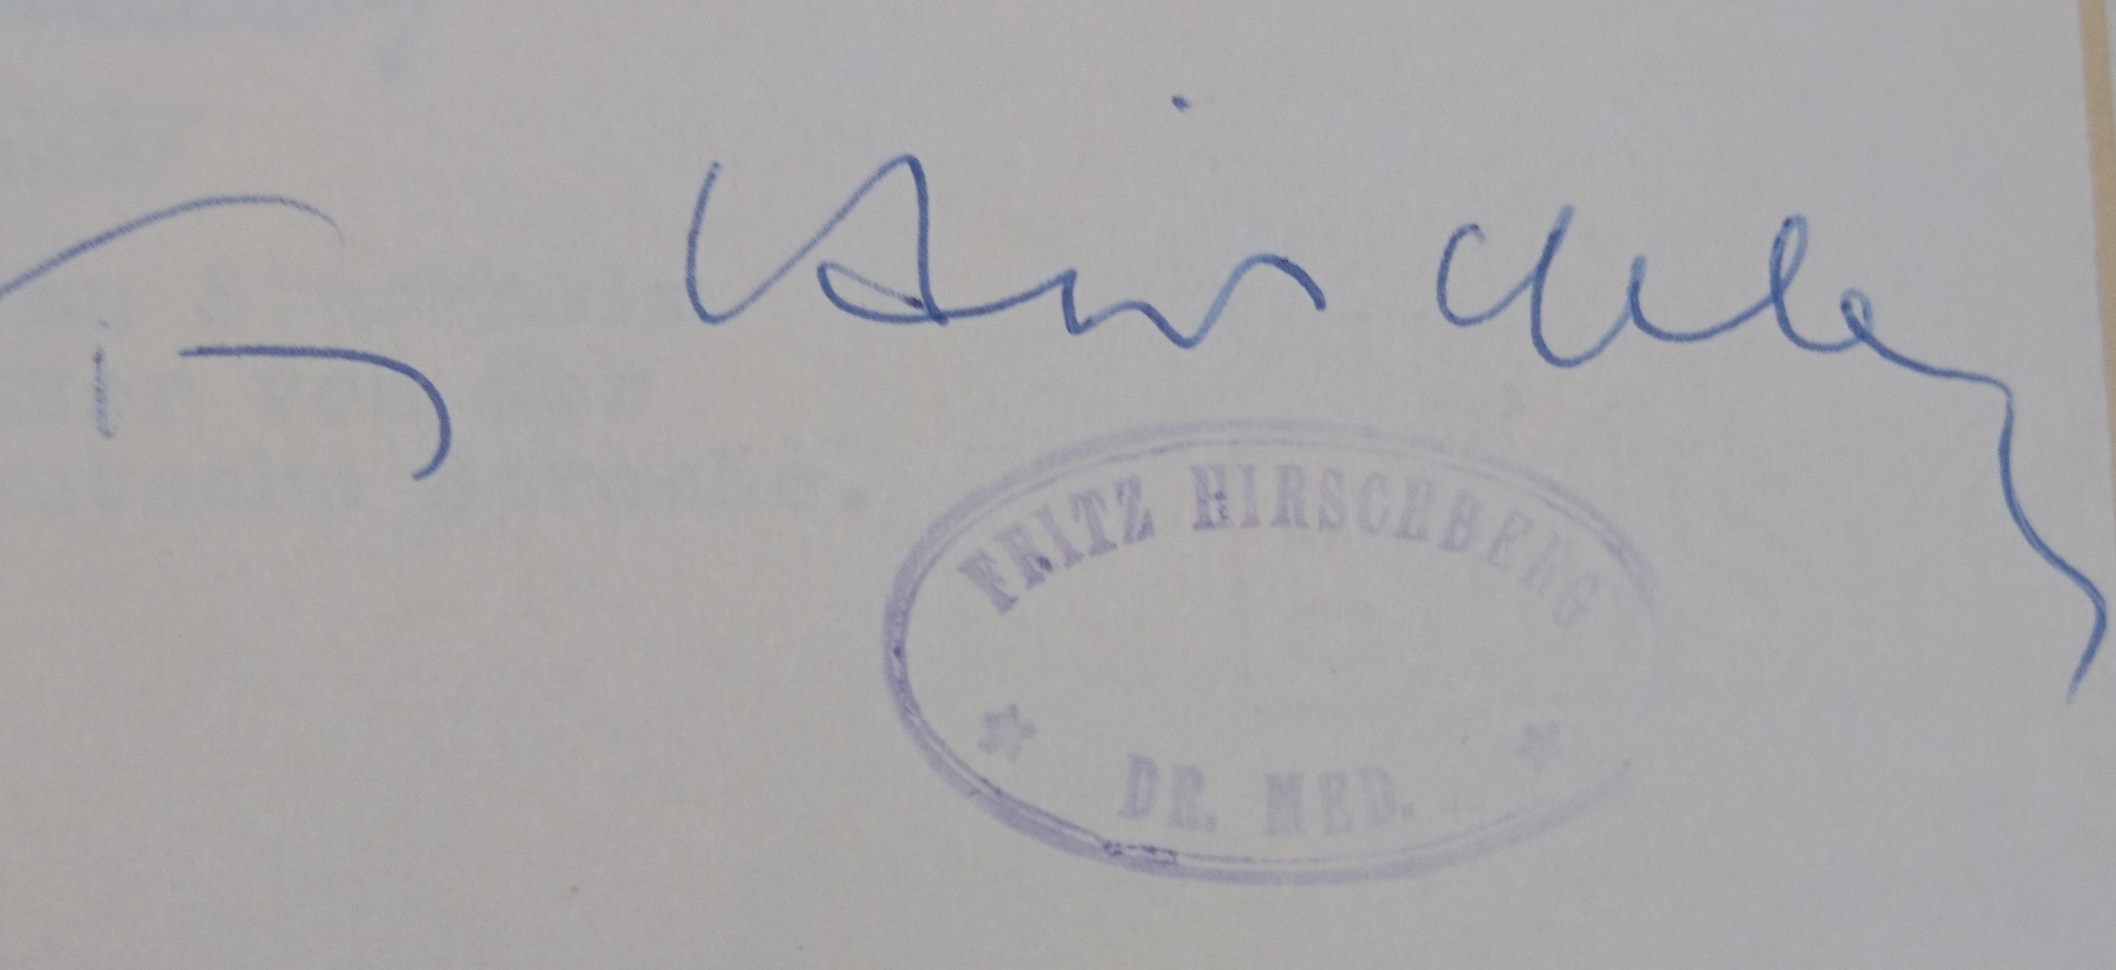 Unterschrift mit Stempel 1951, Quelle: 
Entschädigungsbehörde Berlin, Entschädigungsakte 